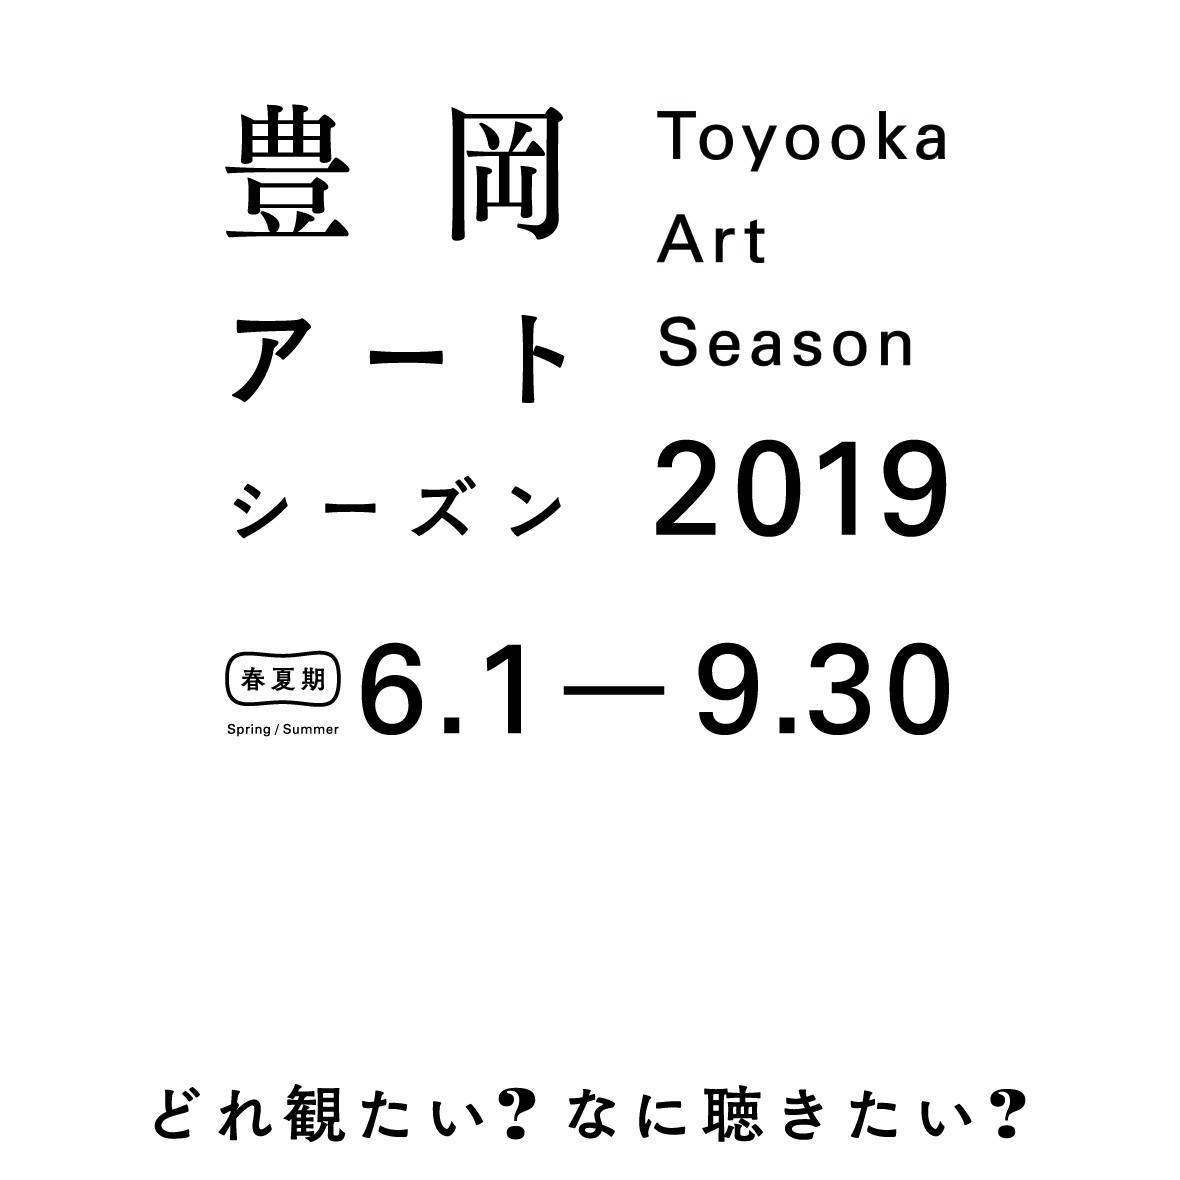 Toyooka Art Season 2019 SUMMER